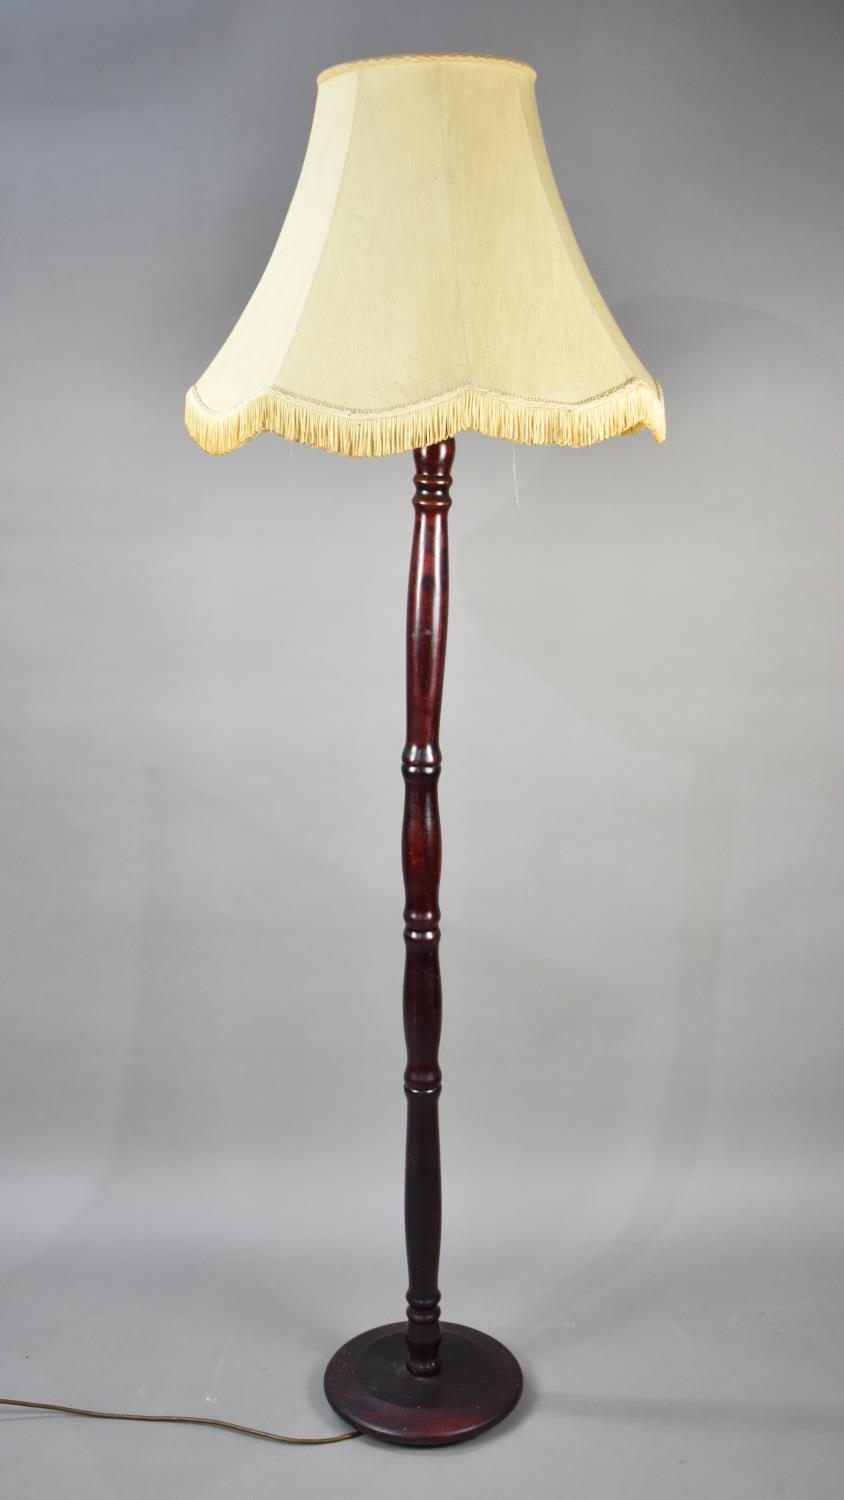 A Mahogany Standard Lamp with Shade